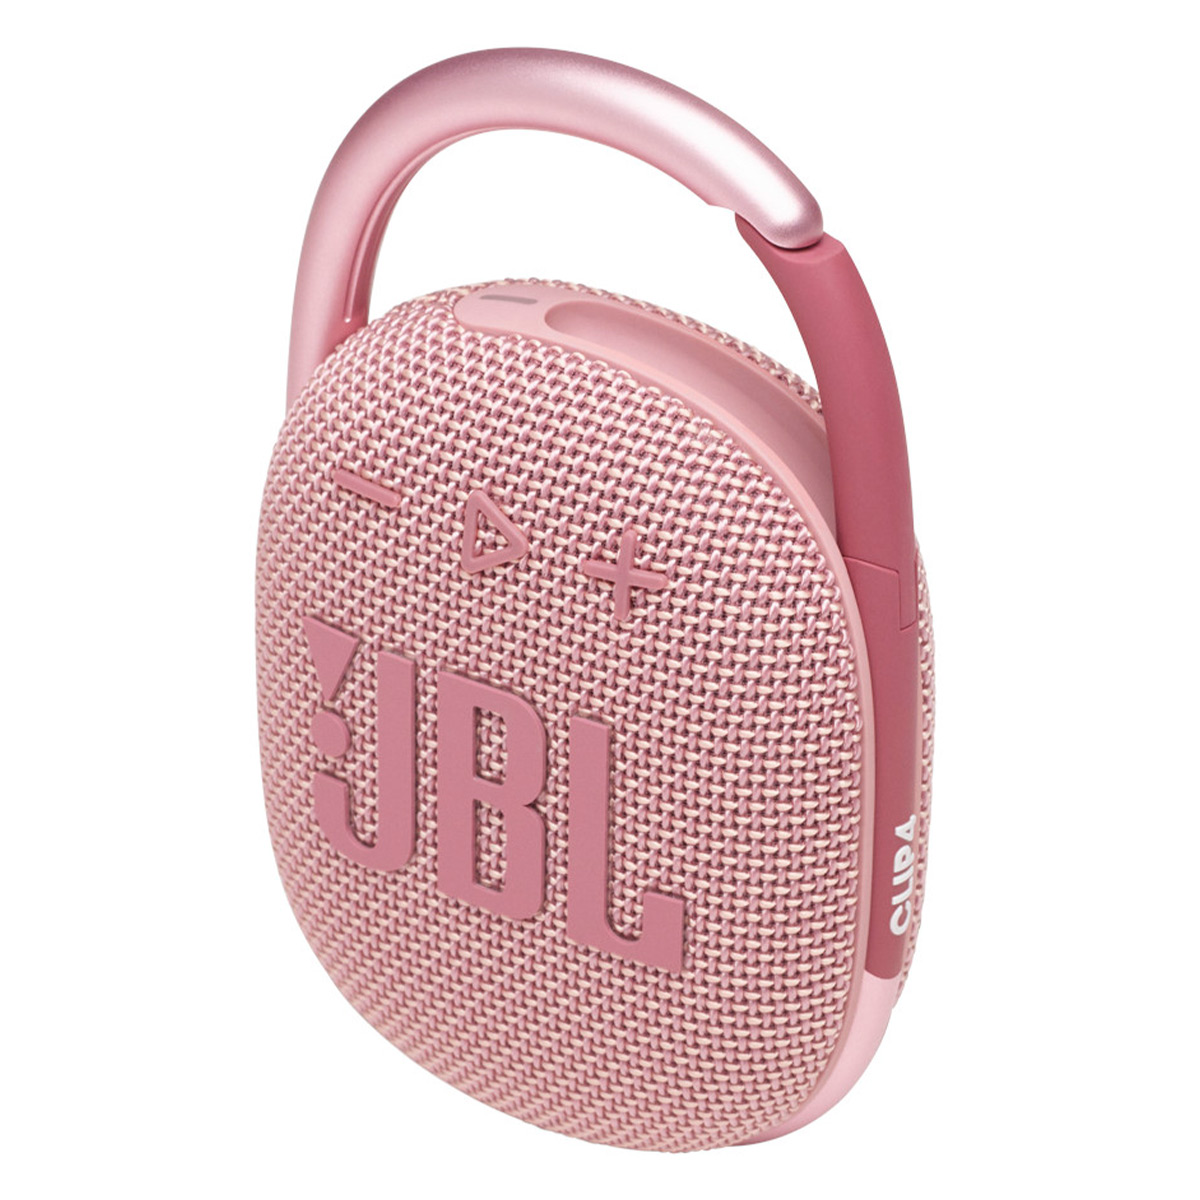 JBL Clip 4 Portable Bluetooth Waterproof Speaker (Pink) - image 3 of 8